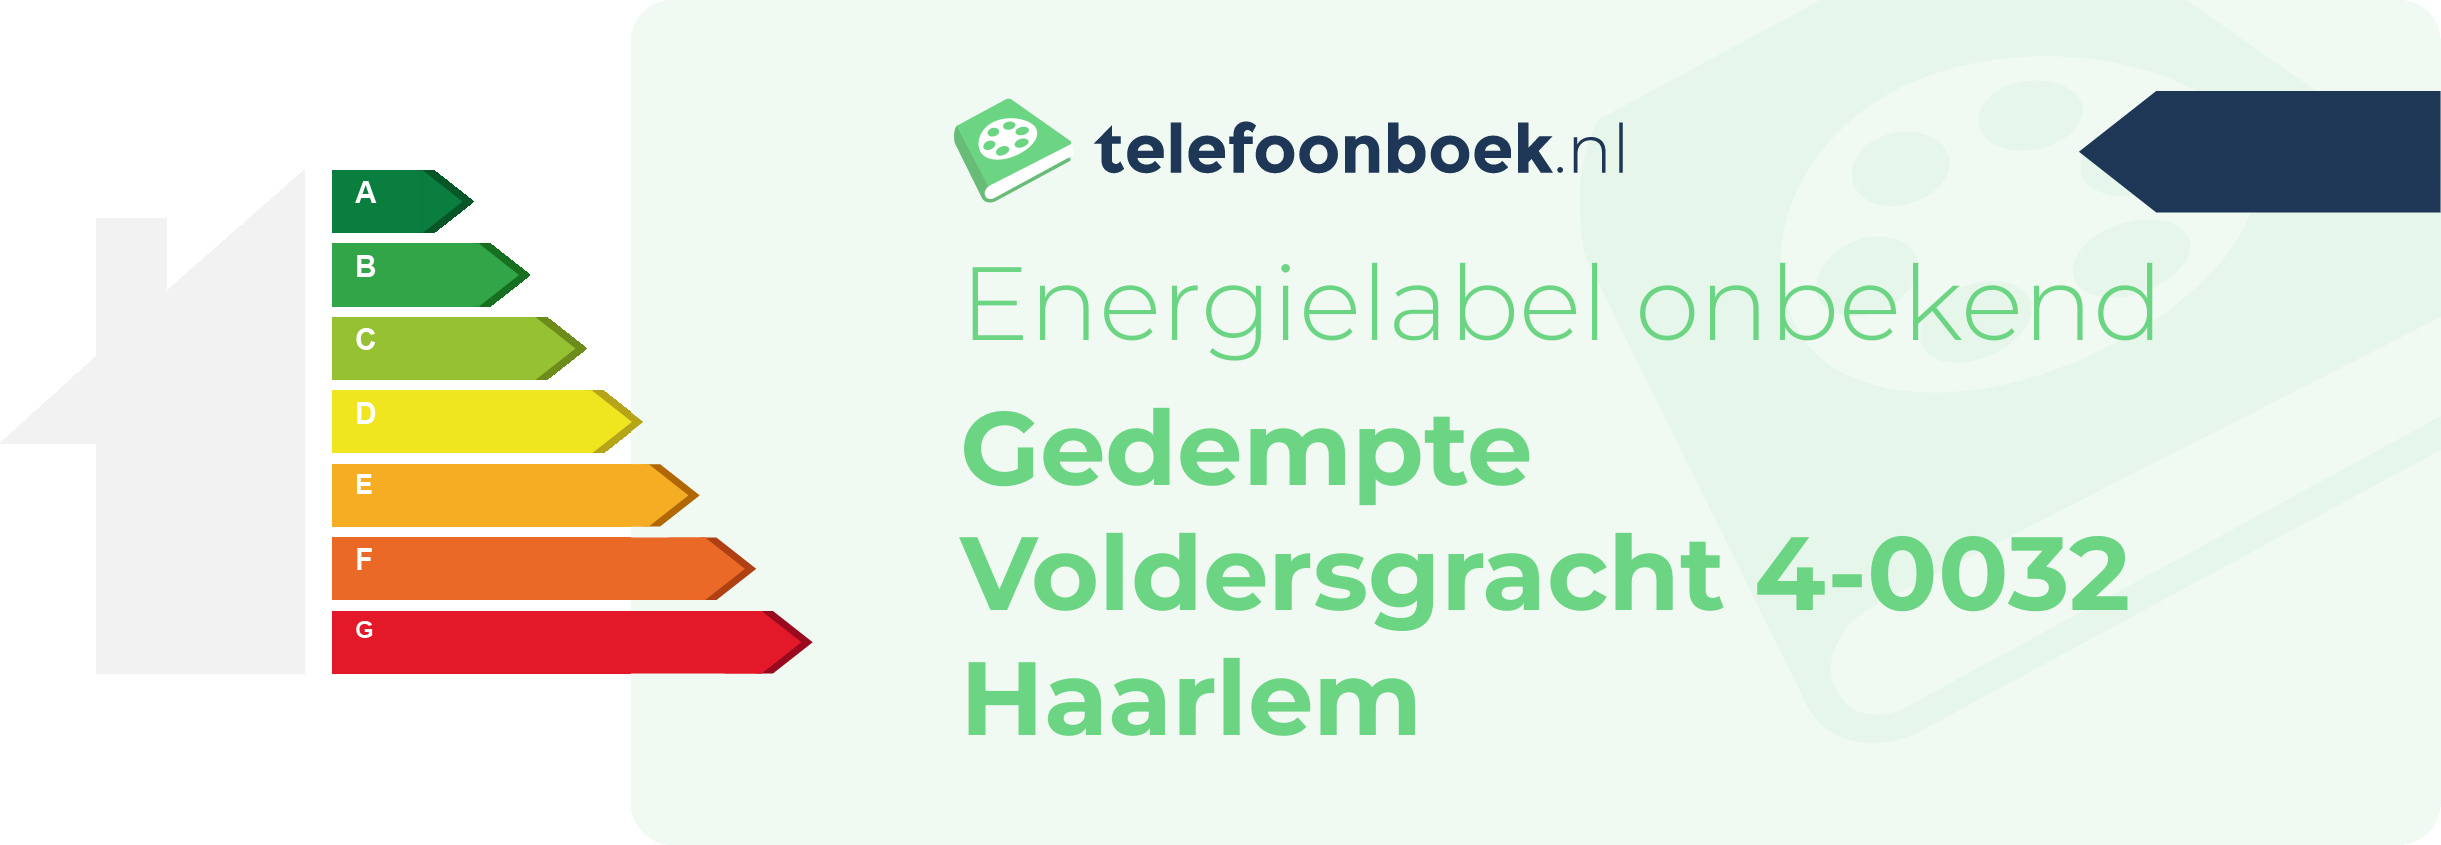 Energielabel Gedempte Voldersgracht 4-0032 Haarlem